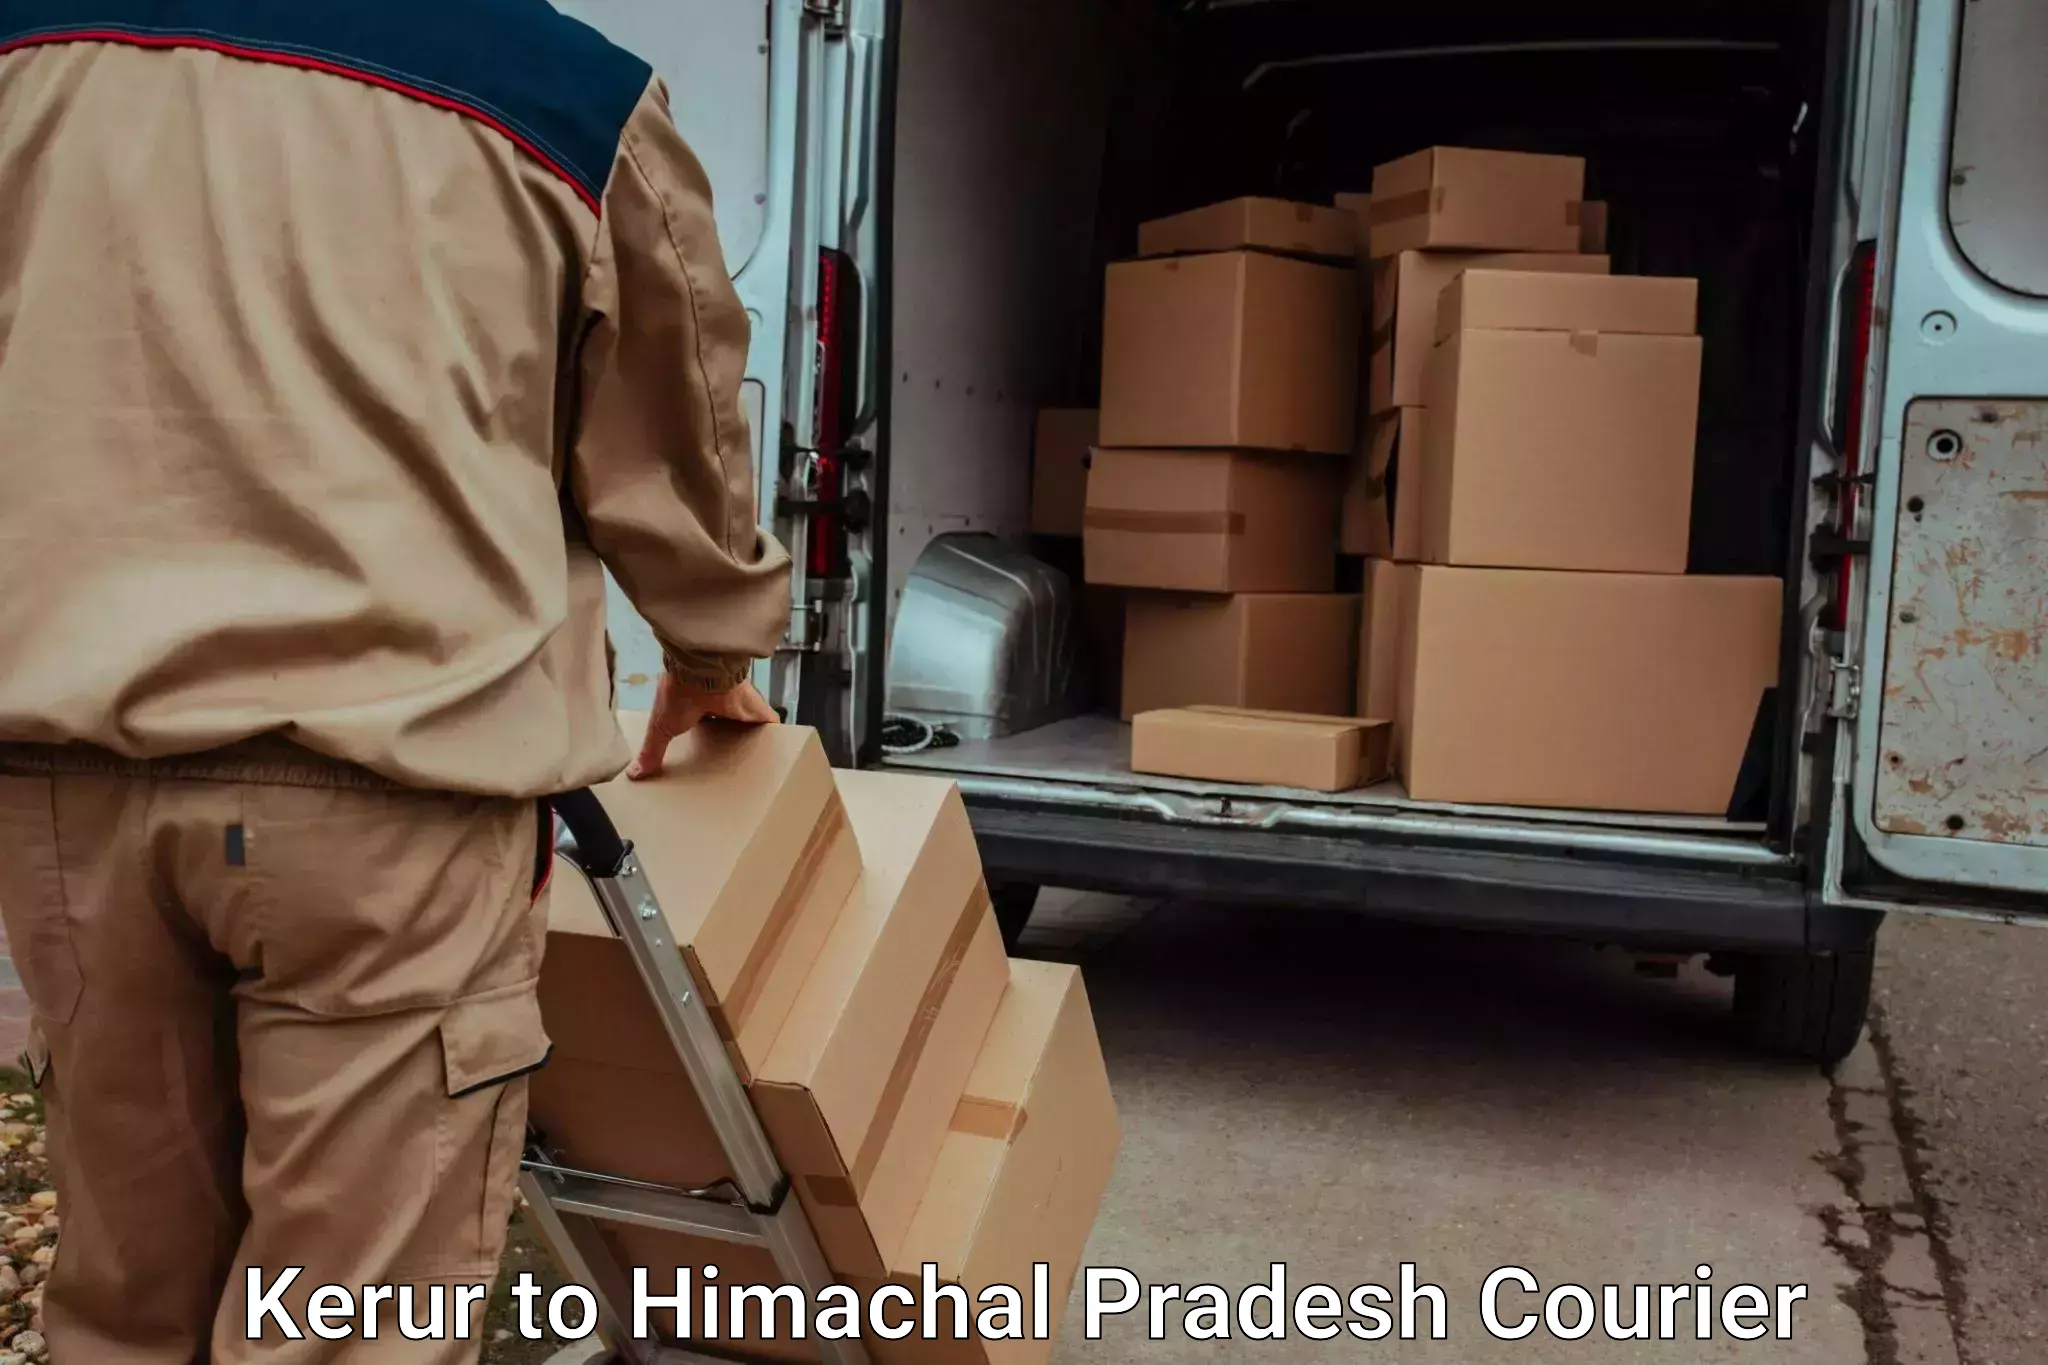 Luggage delivery system Kerur to Una Himachal Pradesh